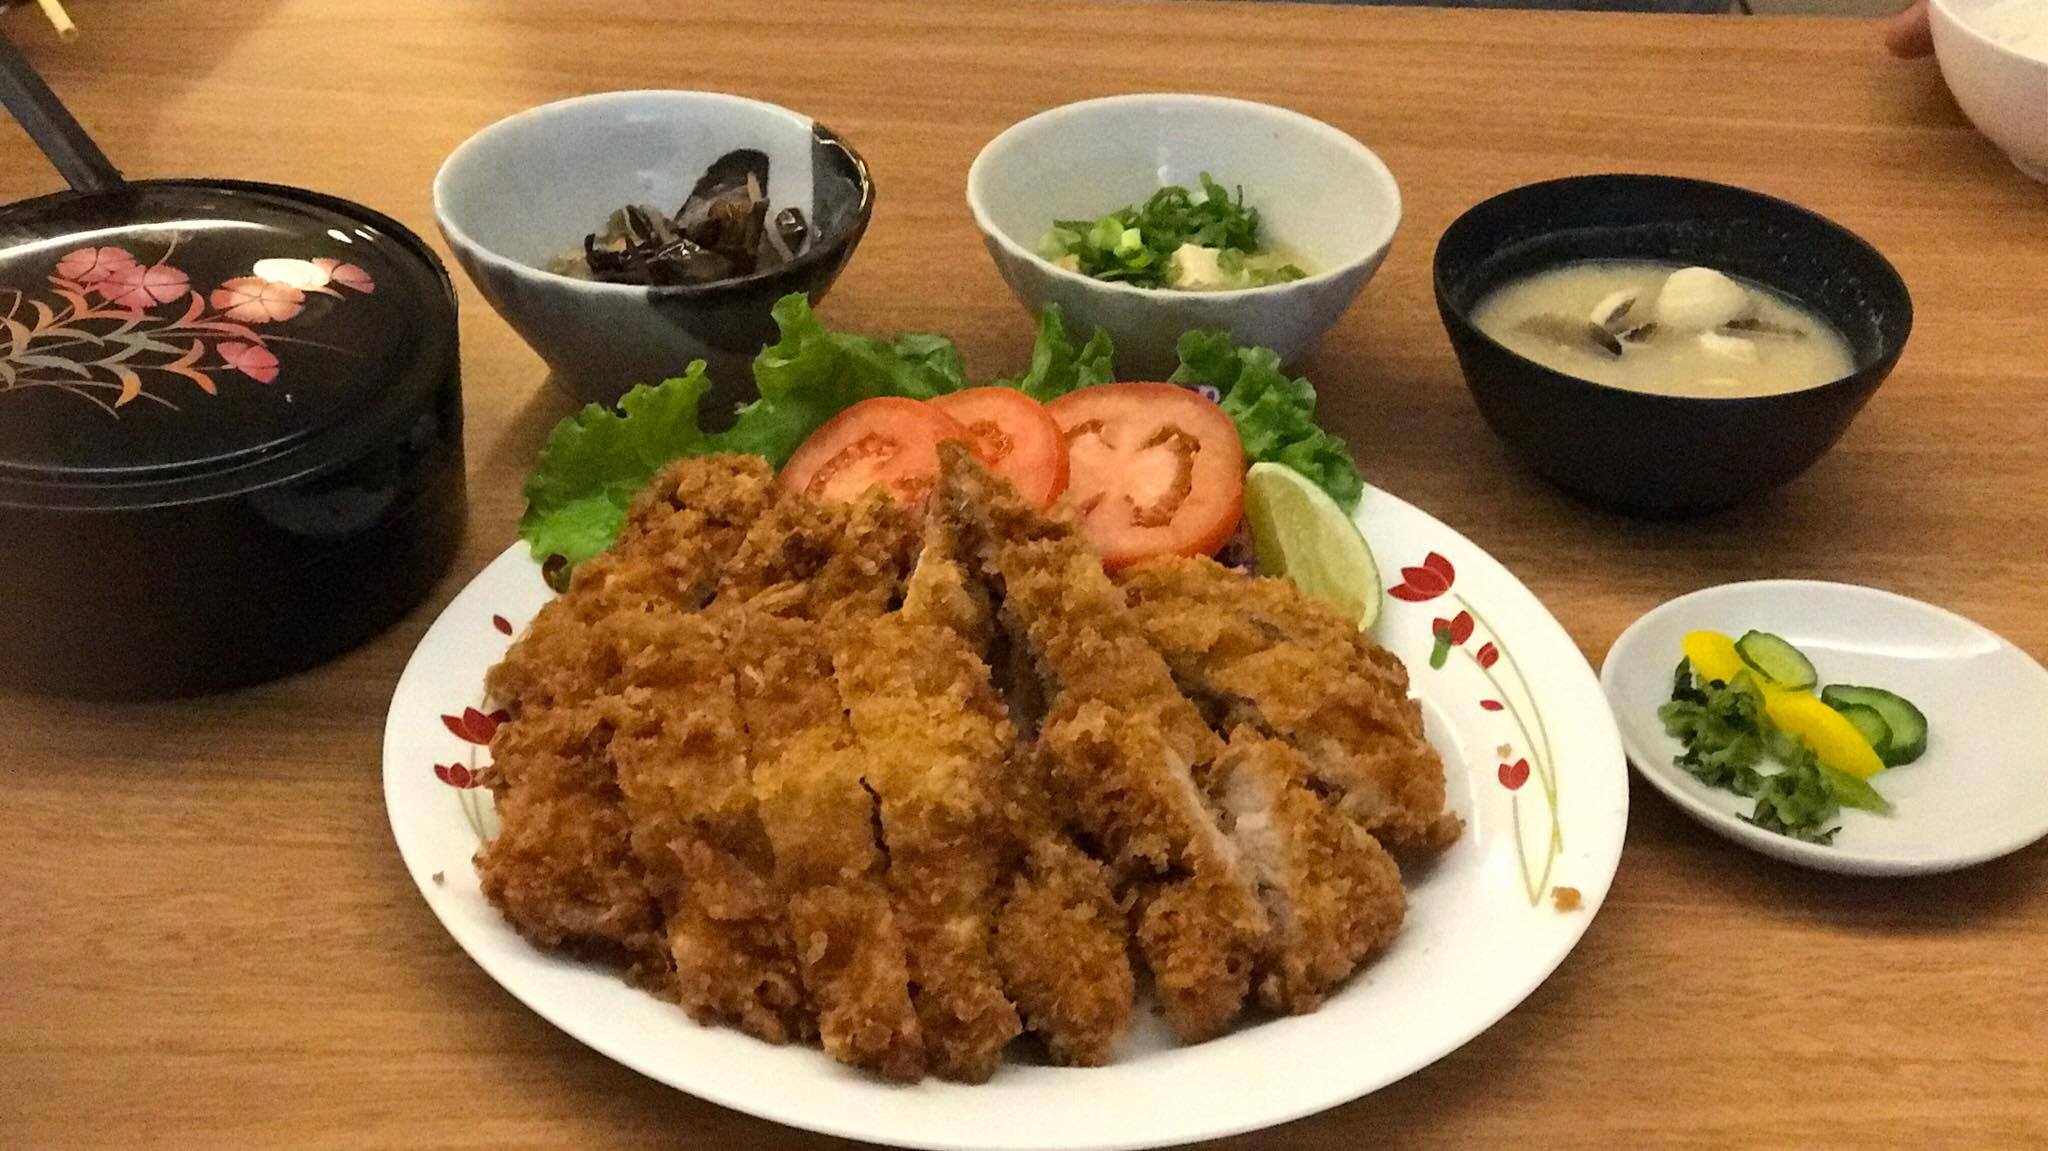 Imagem do Tonkatsu Teishoku do Restaurante Japonês New Mimatsu, um prato delicioso e muito bem servido.